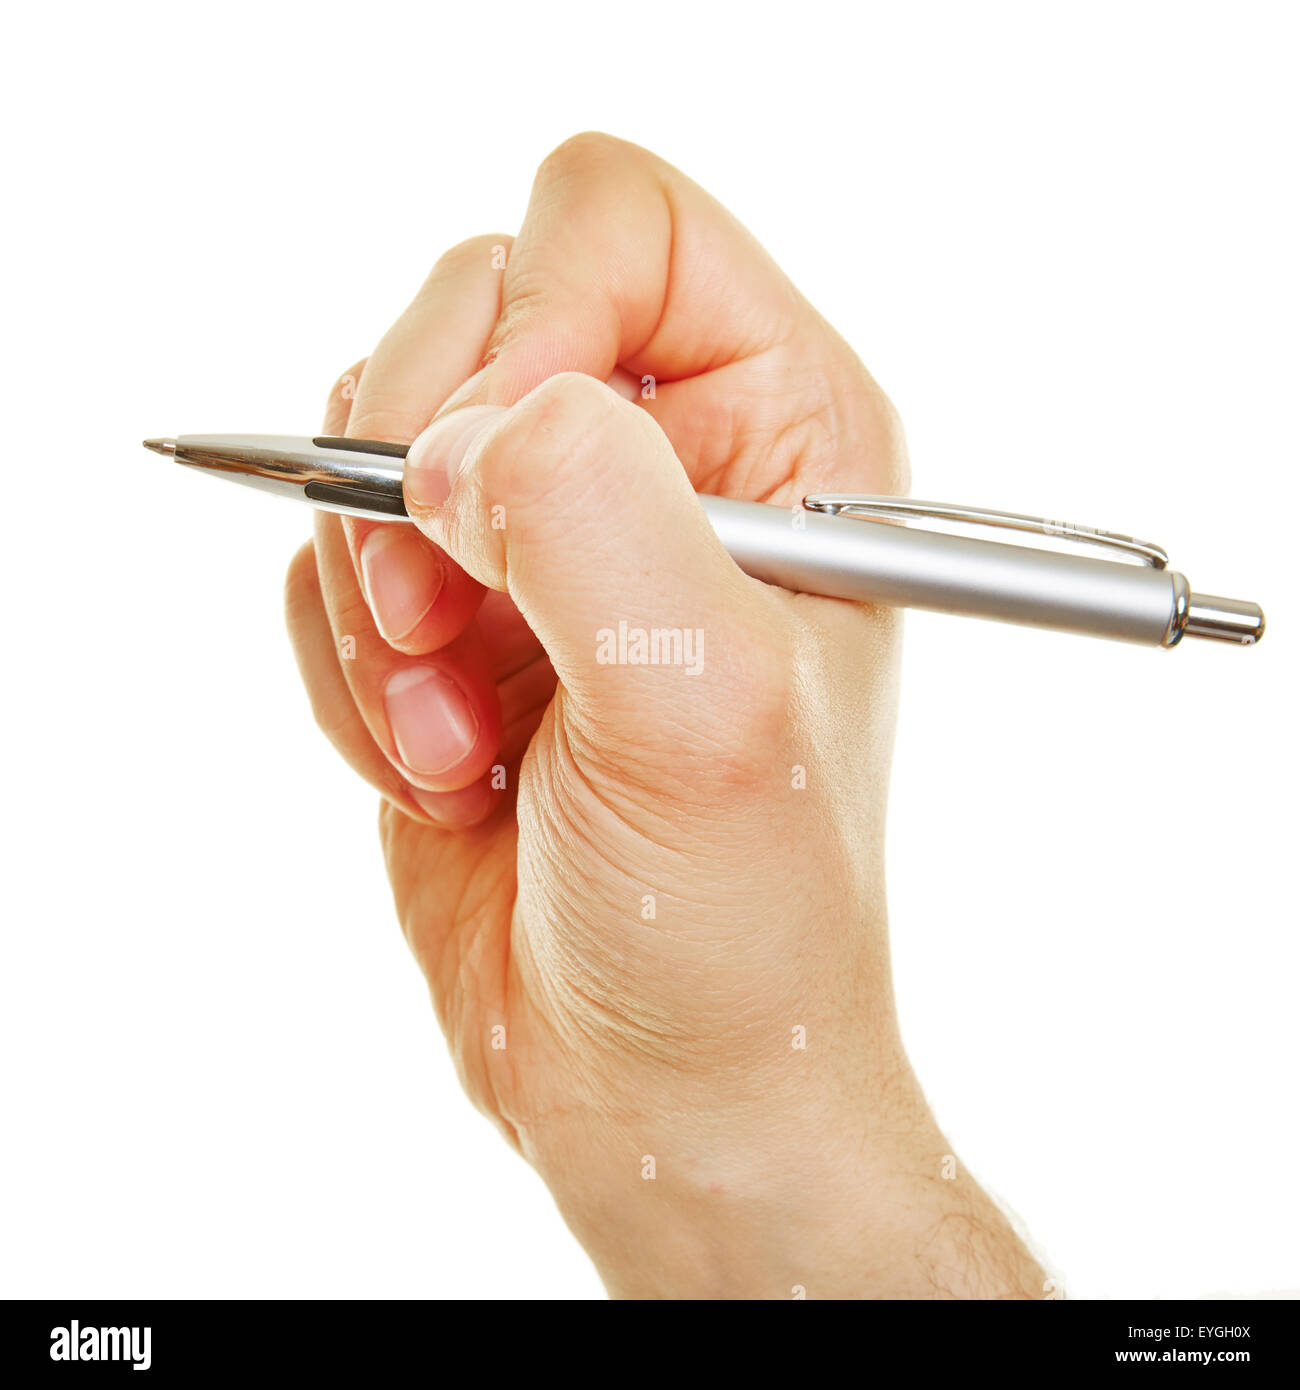 Vue de côté de main tenant un stylo entre les doigts Photo Stock - Alamy